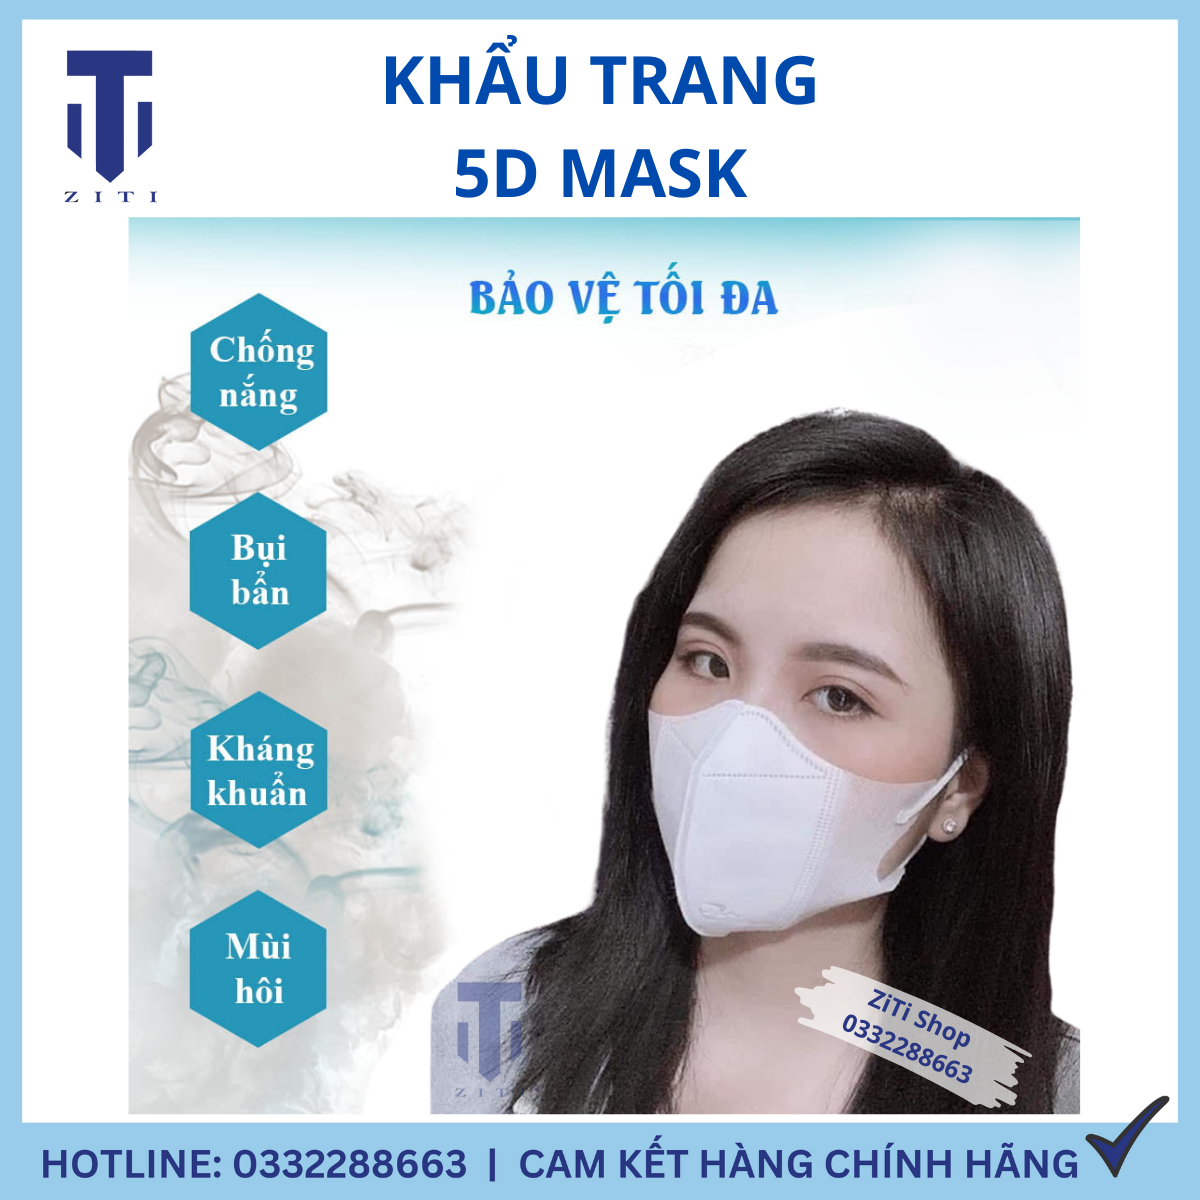 Set 100 Chiếc Khẩu Trang 5D Mask THÁI LAN CAREION (An Phong) 3 Lớp Lọc Bụi Mịn Nhiều Màu Lạ Siêu Đẹp